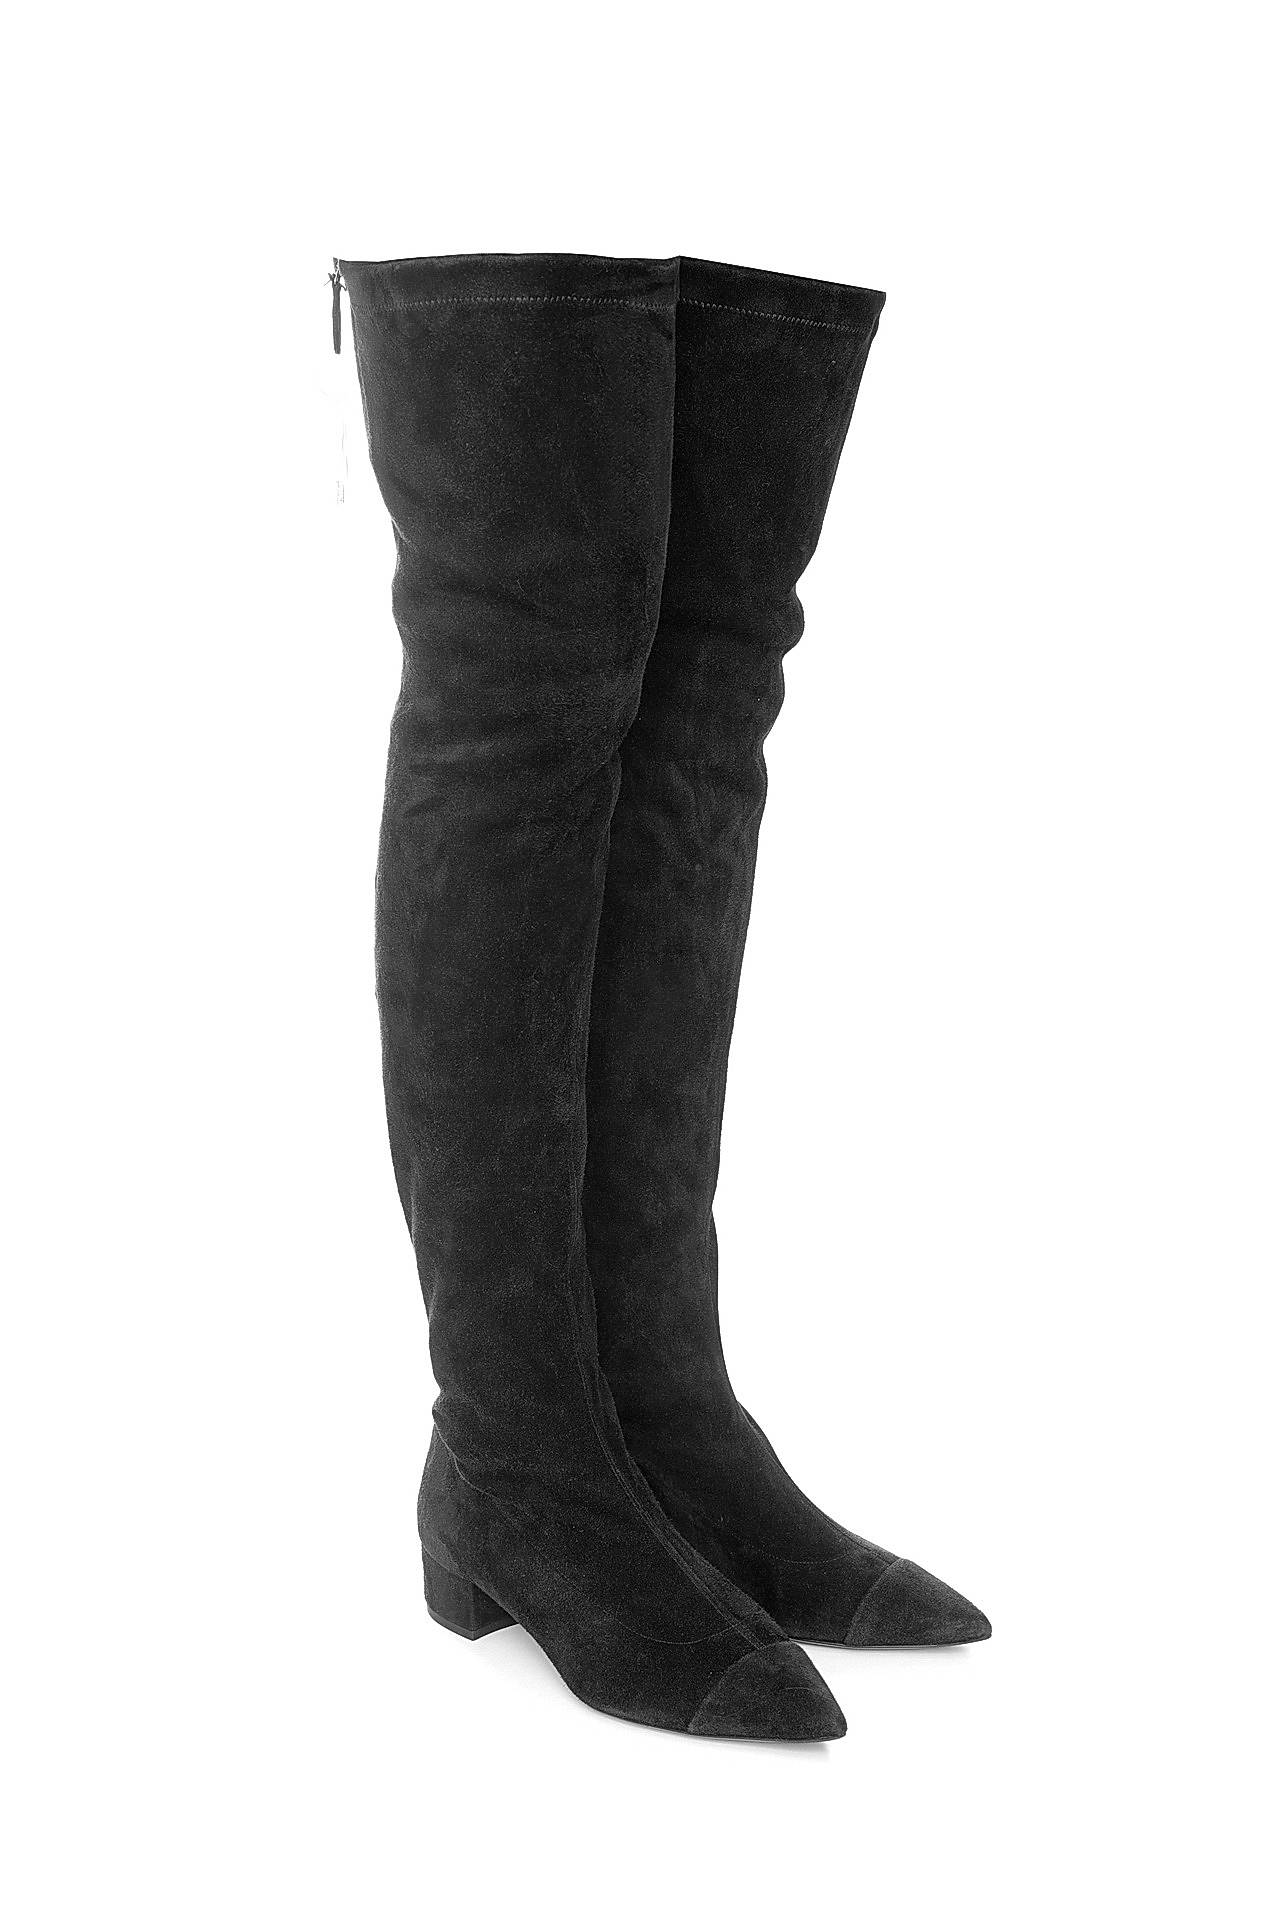 Обувь женская Сапоги CHANEL (GZ3047/16.1). Купить за 115850 руб.